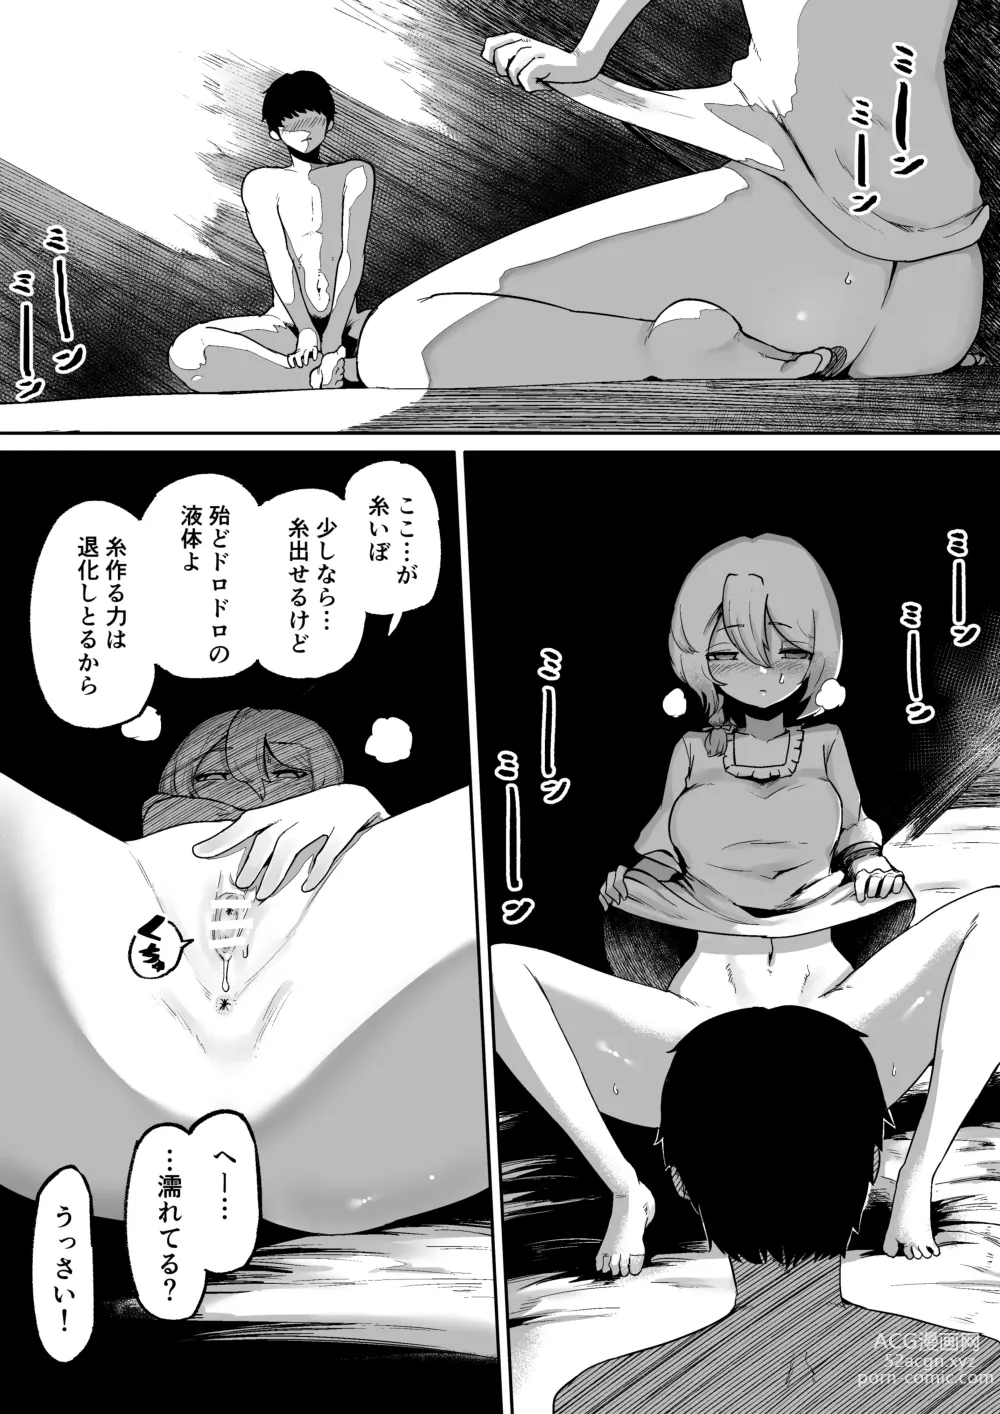 Page 43 of doujinshi Kamisama to Kodomo ga Dekiru made